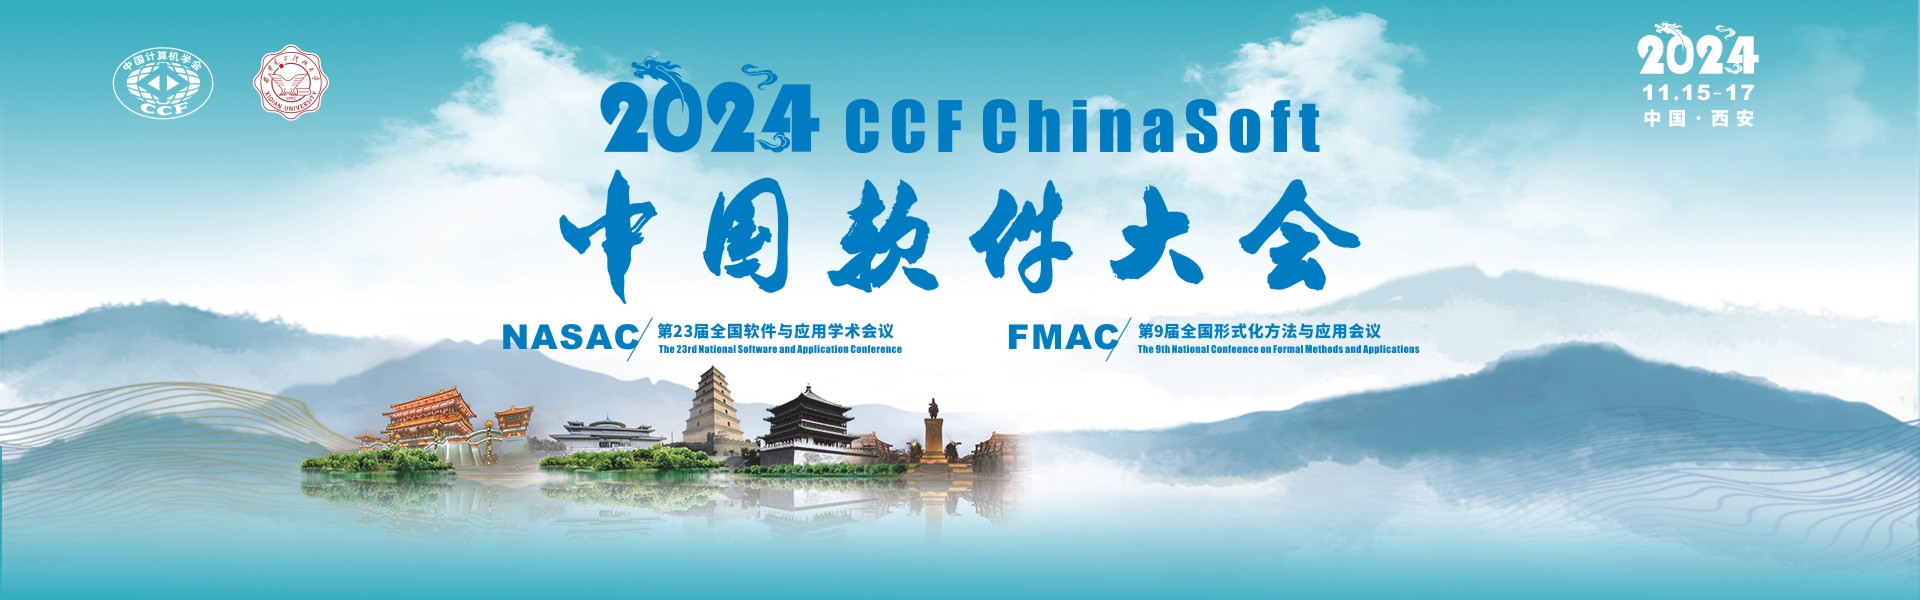 2024中国软件大会